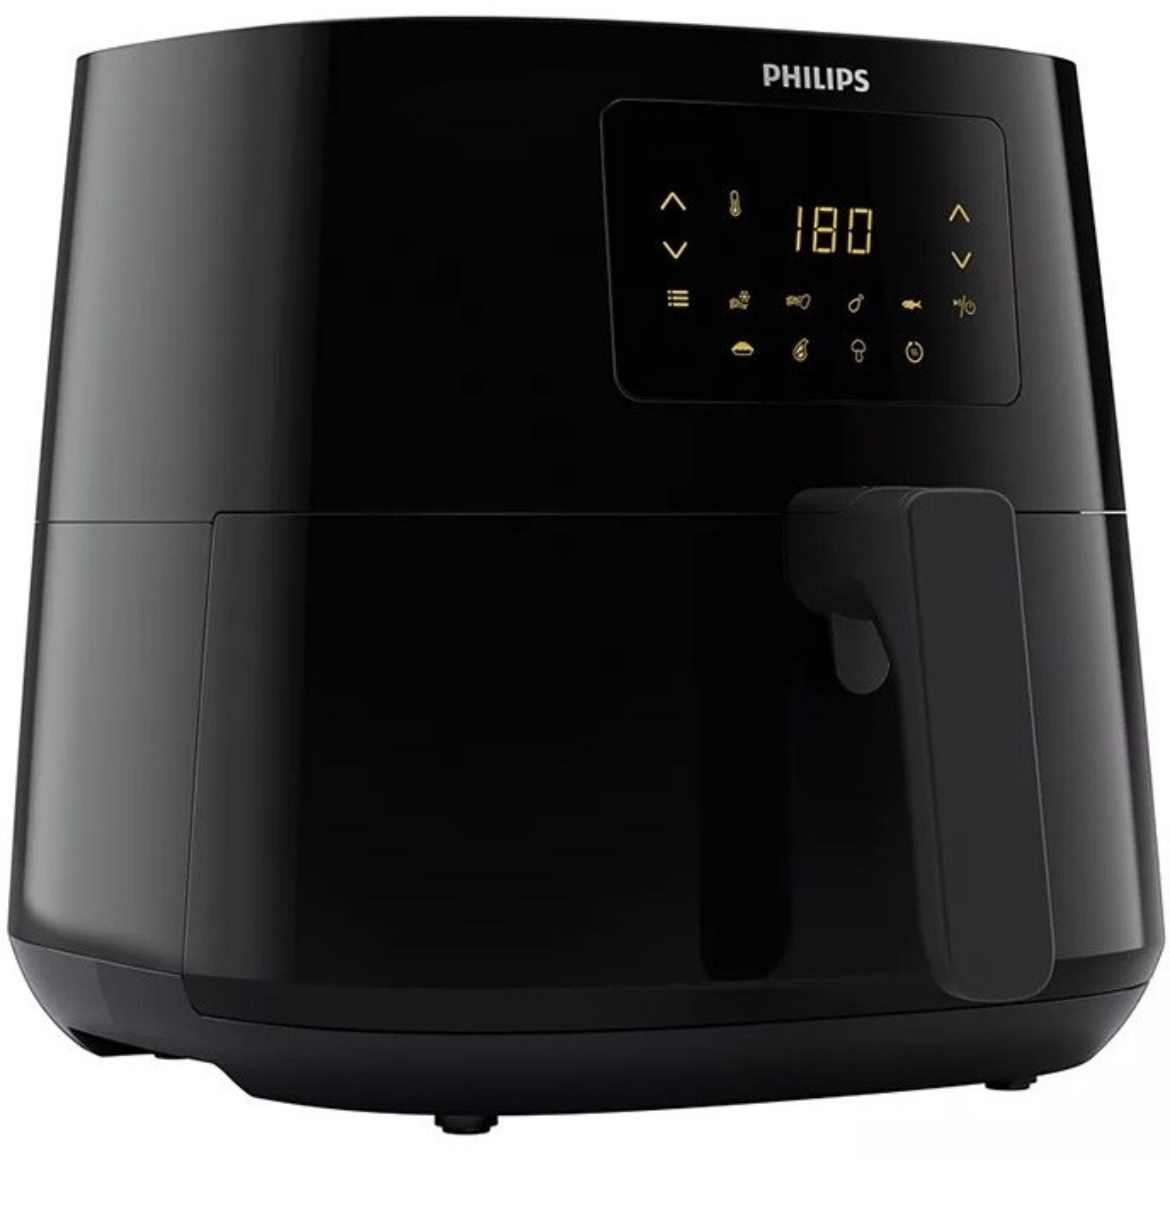 سرخ کن فیلیپس مدل HD9270 ا PHILIPS Fryer HD9270